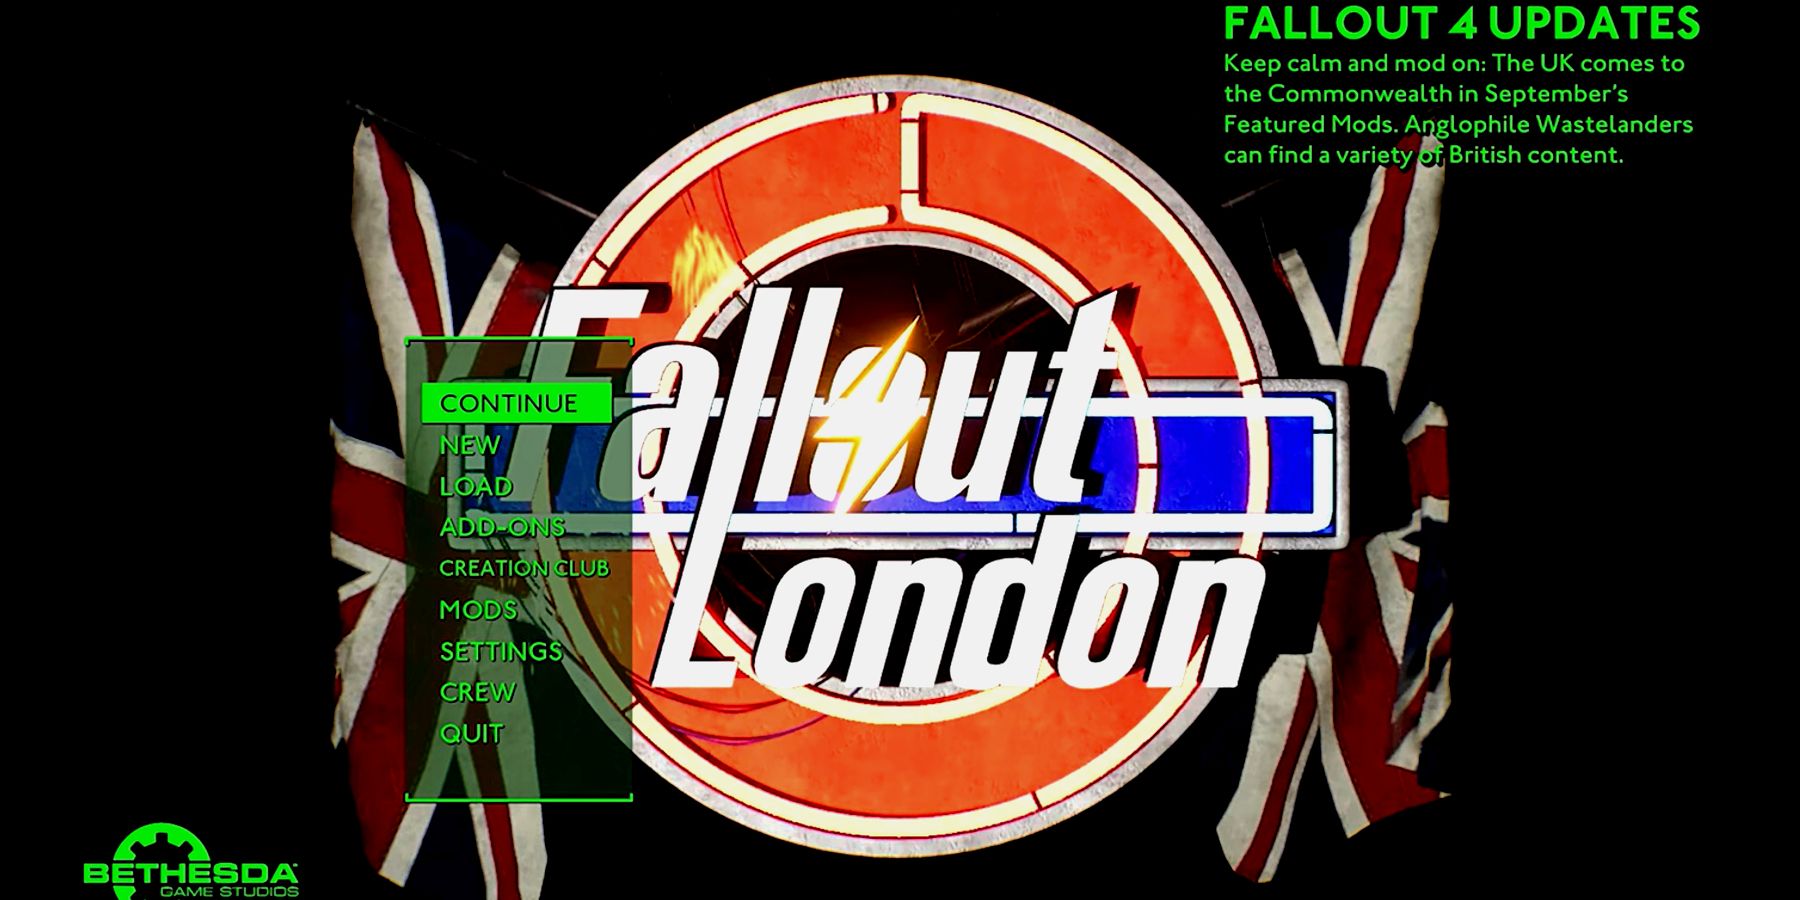 Fallout London fallout 4 start screen update